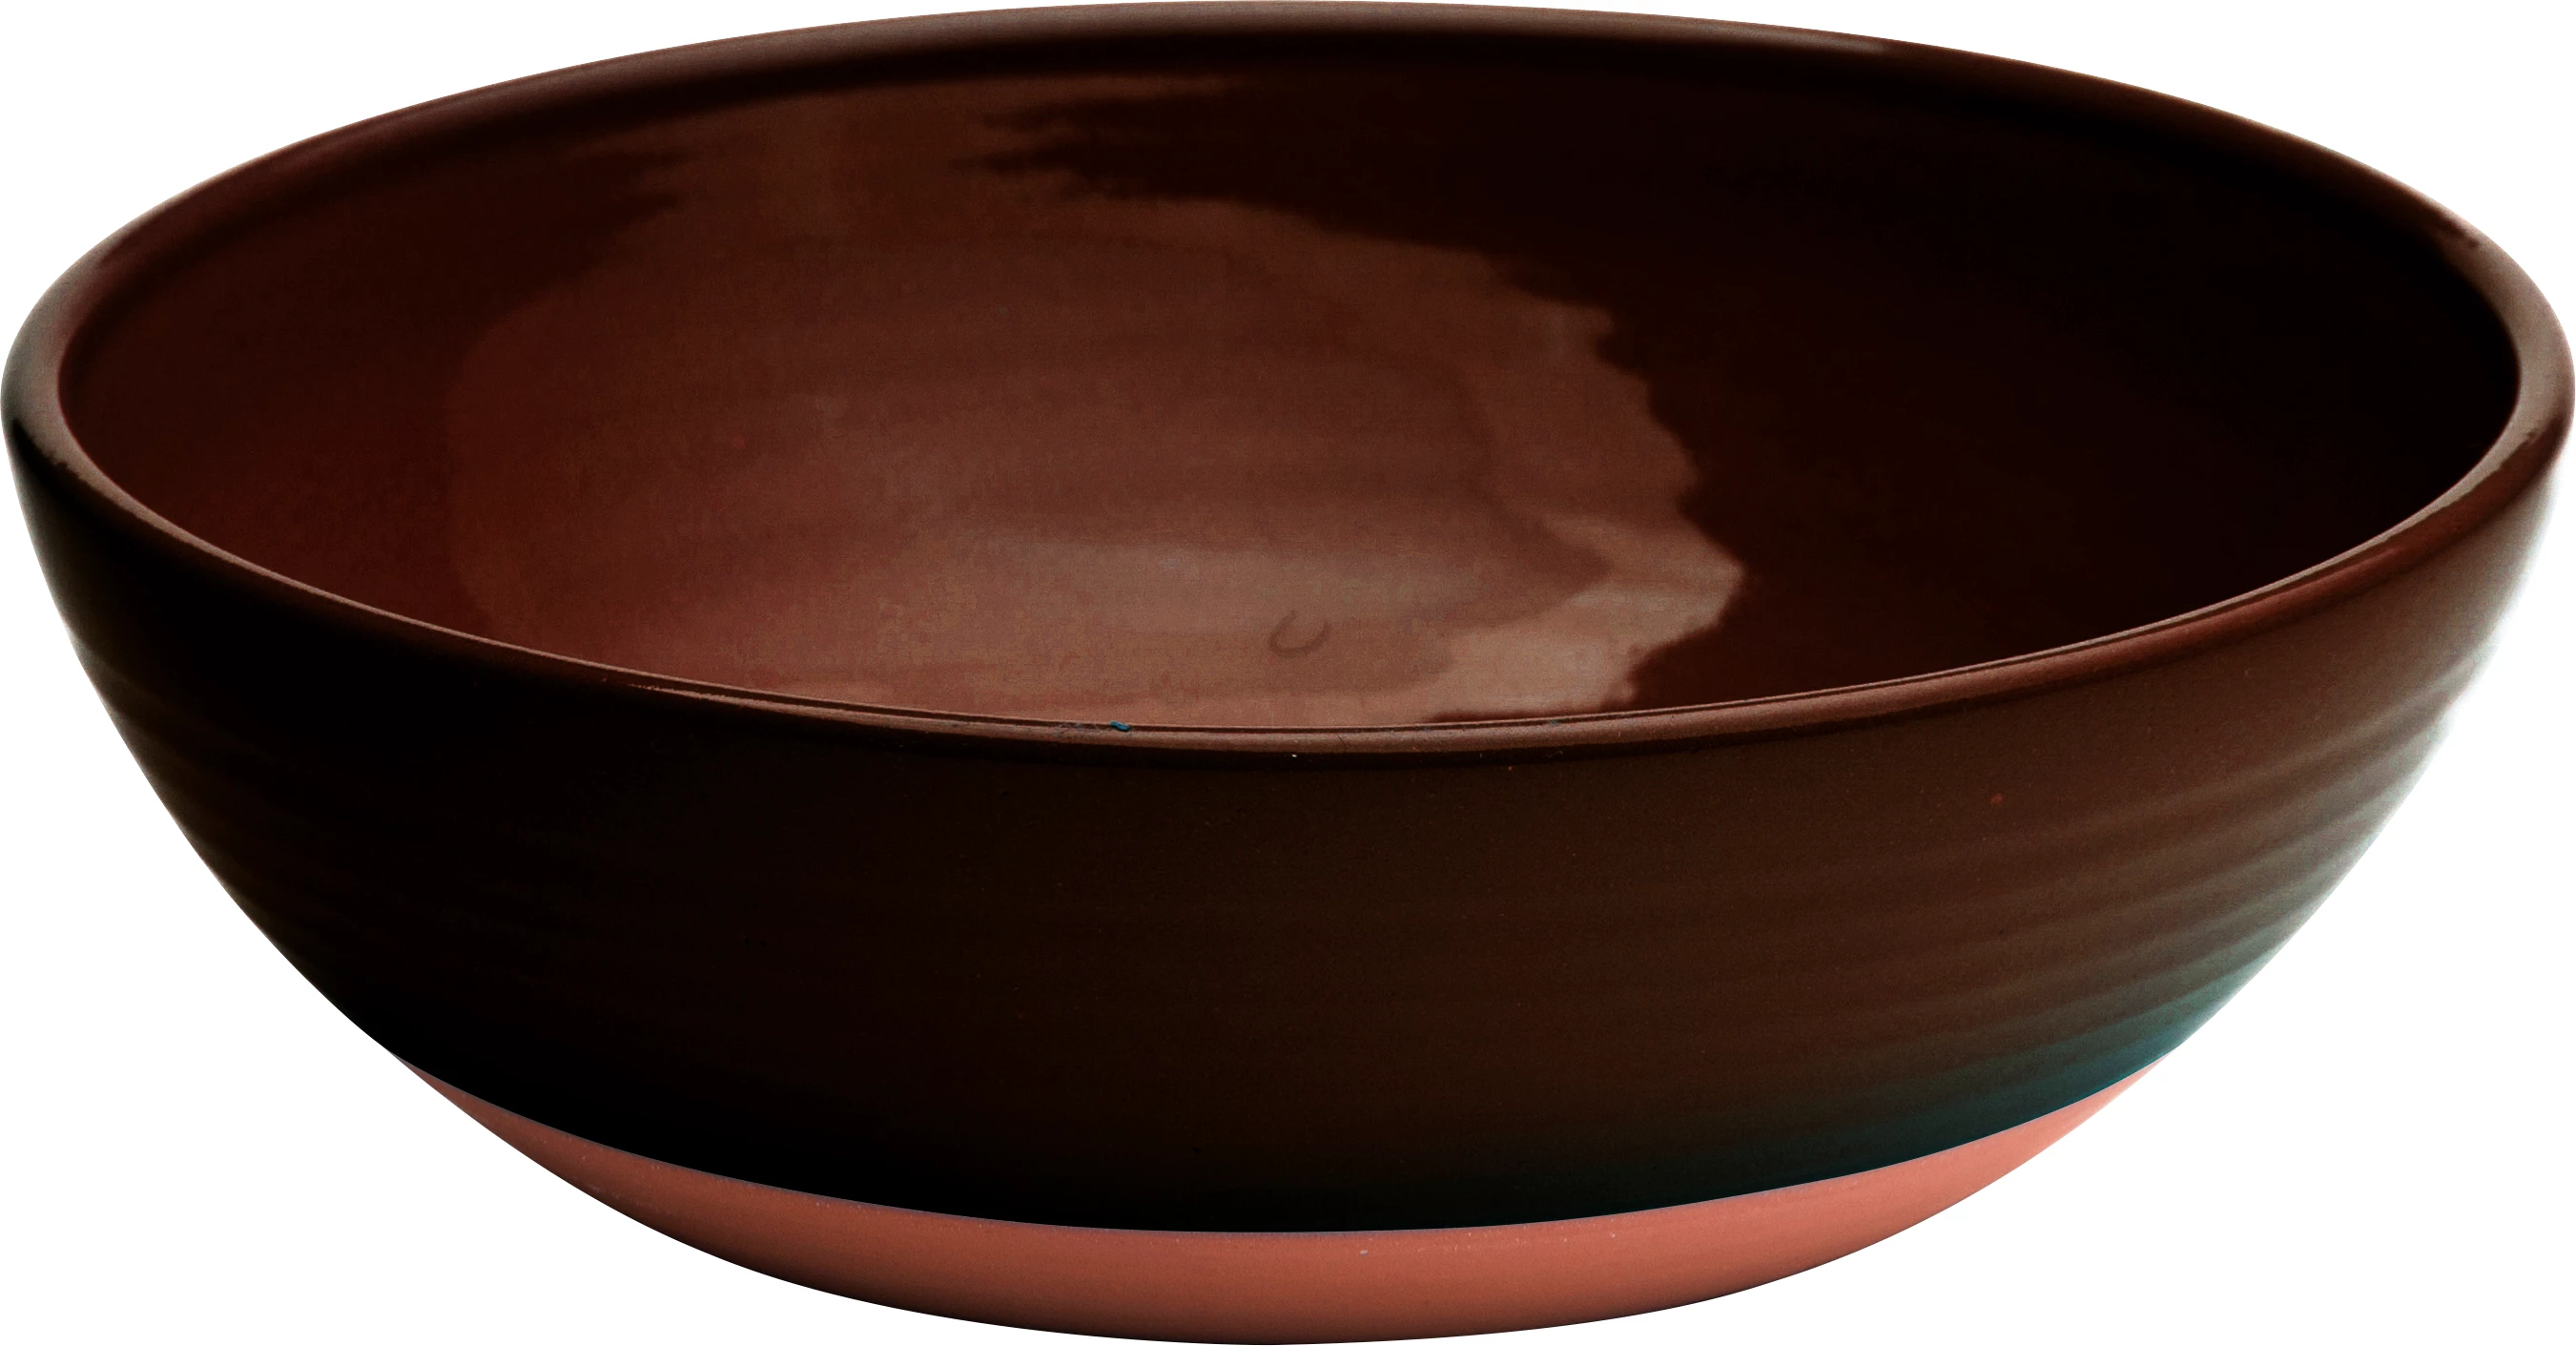 Graupera skål, brun/rødbrun, 80 cl, ø21 cm